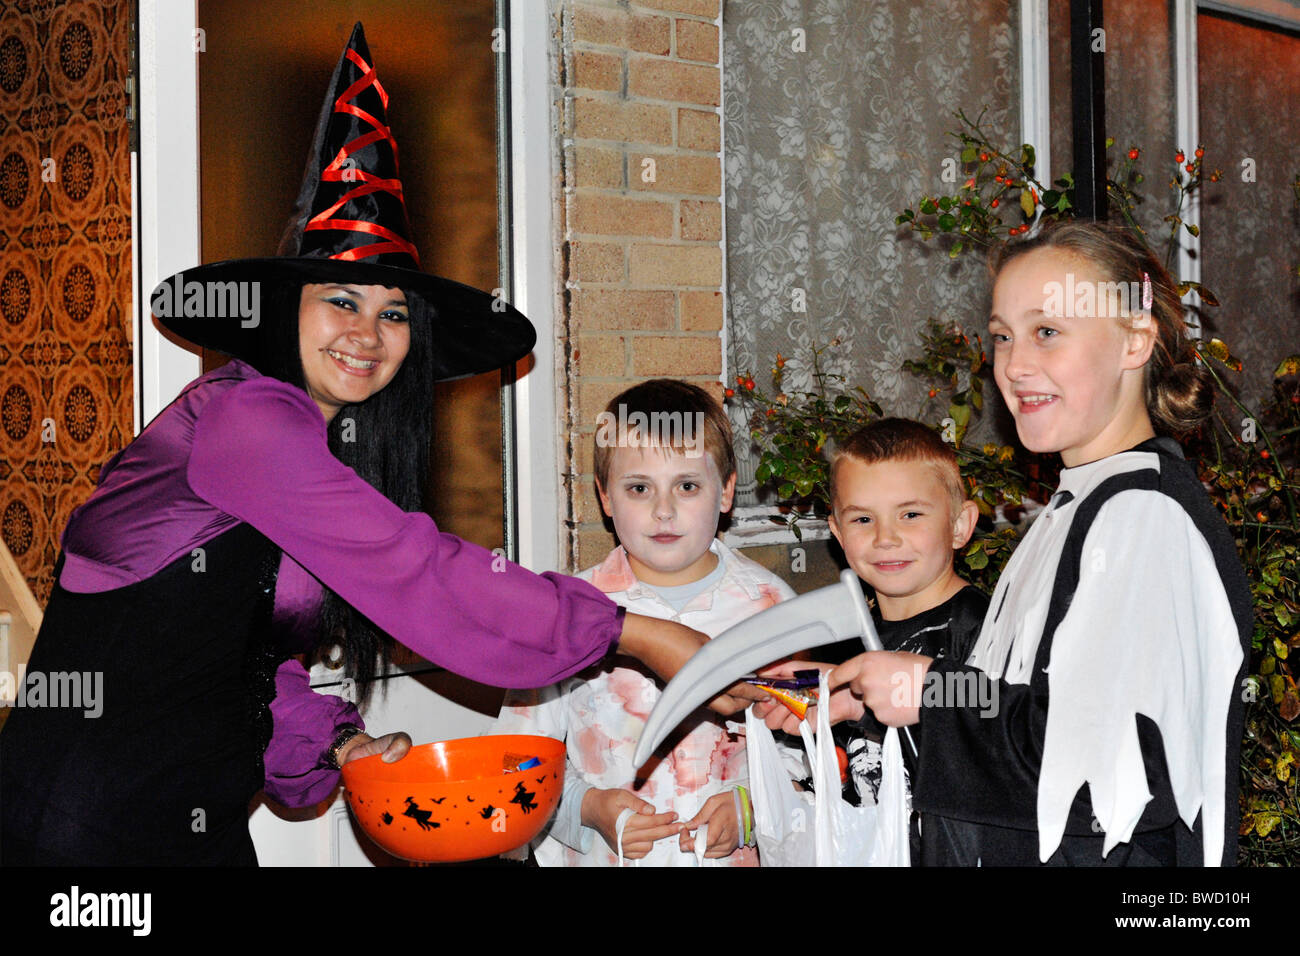 Donna vestita come una strega dare ai bambini caramelle e dolci durante il periodo di halloween dolcetto o scherzetto Foto Stock